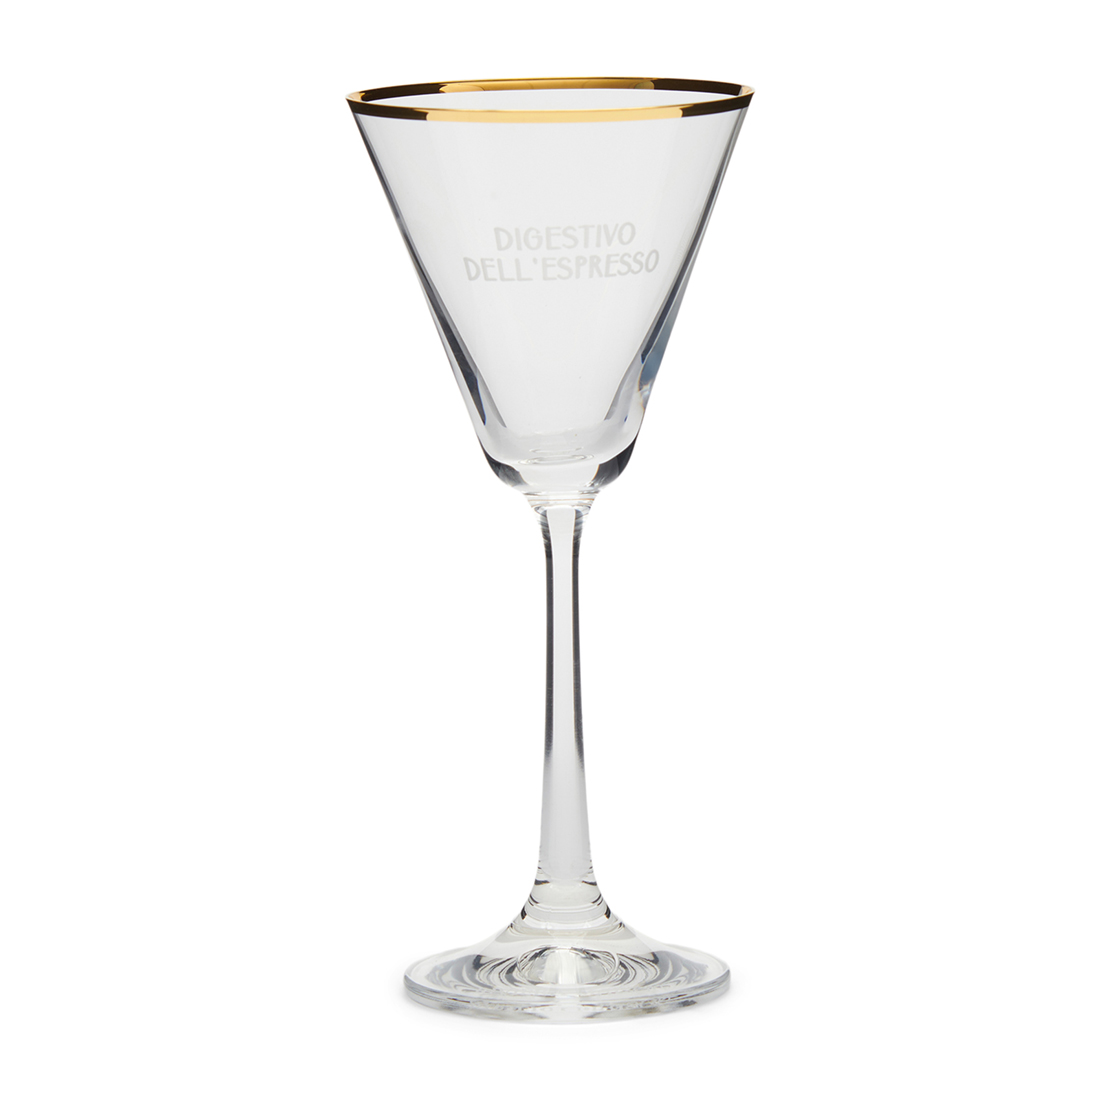 Riviera Maison Espresso Martini Glas - Digestivo Dell'Espresso - Transparant